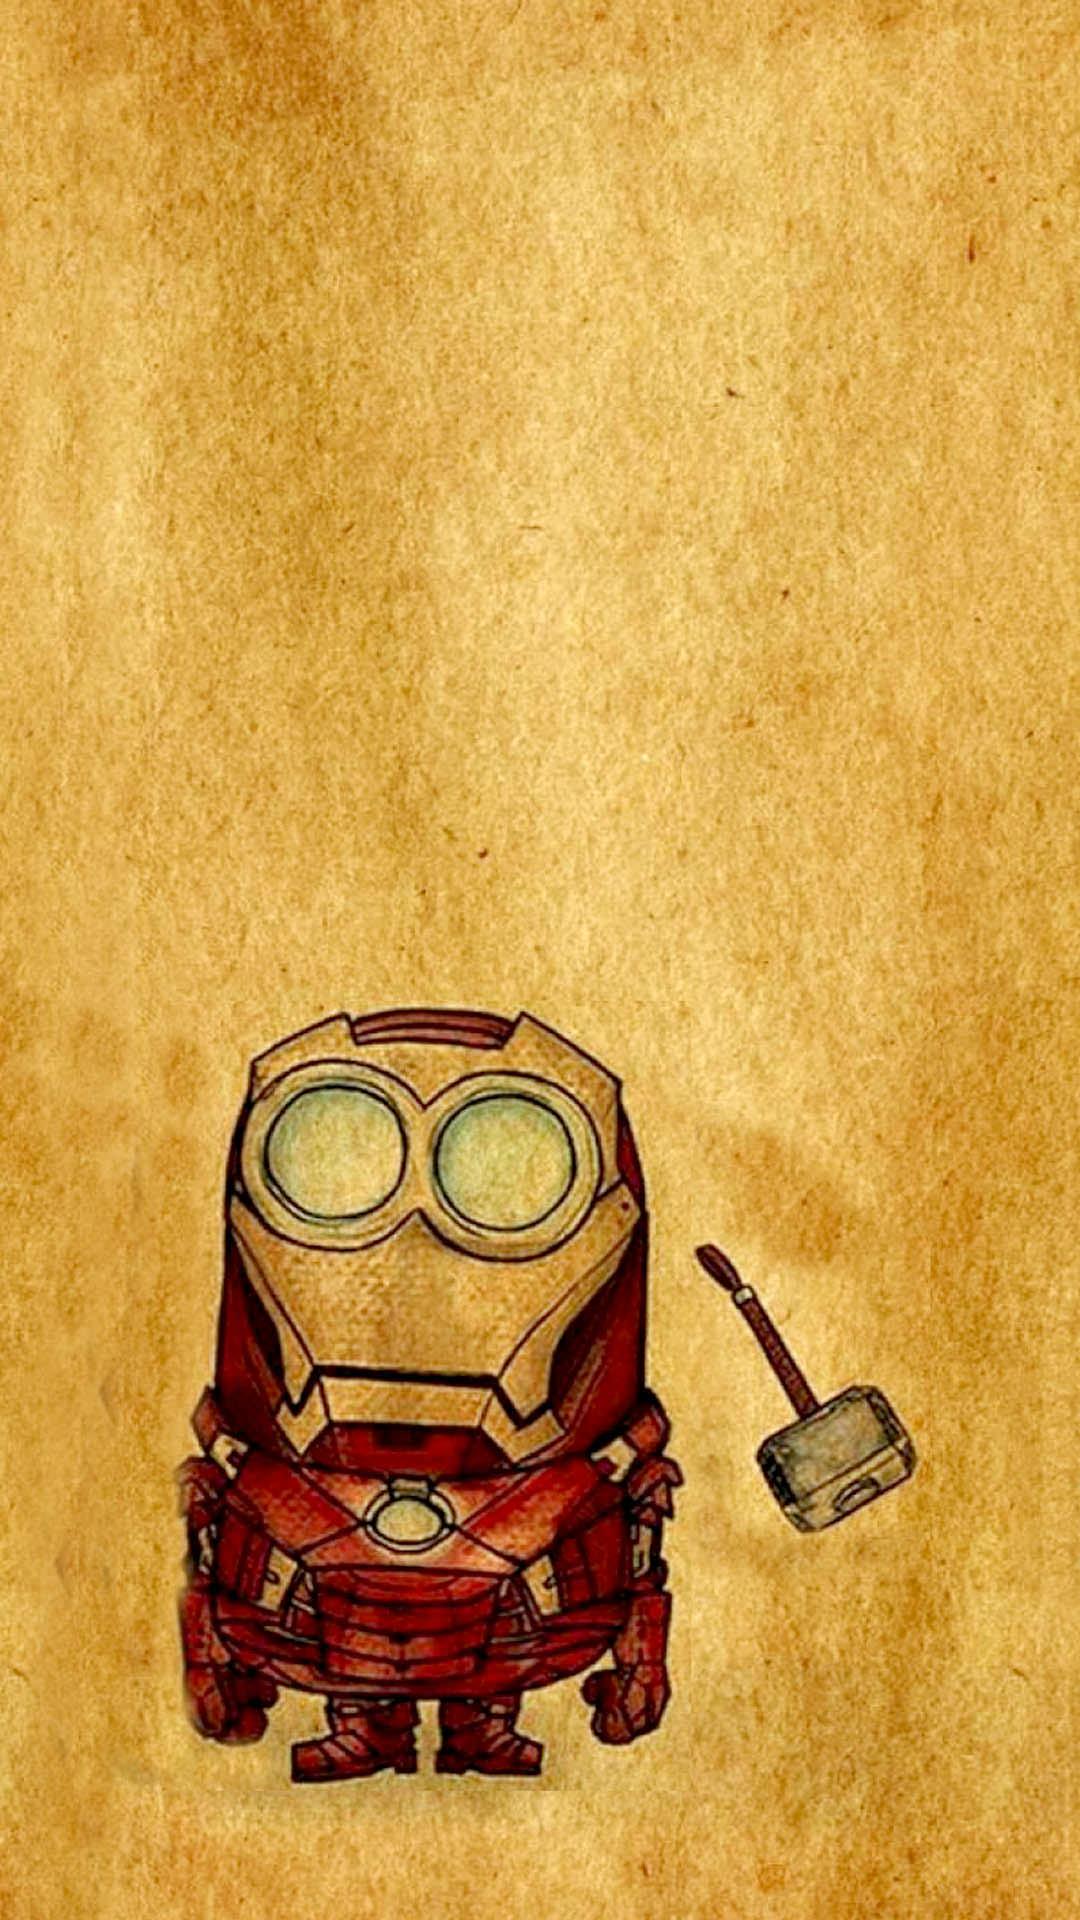 Iron Man X Minion Wallpapers